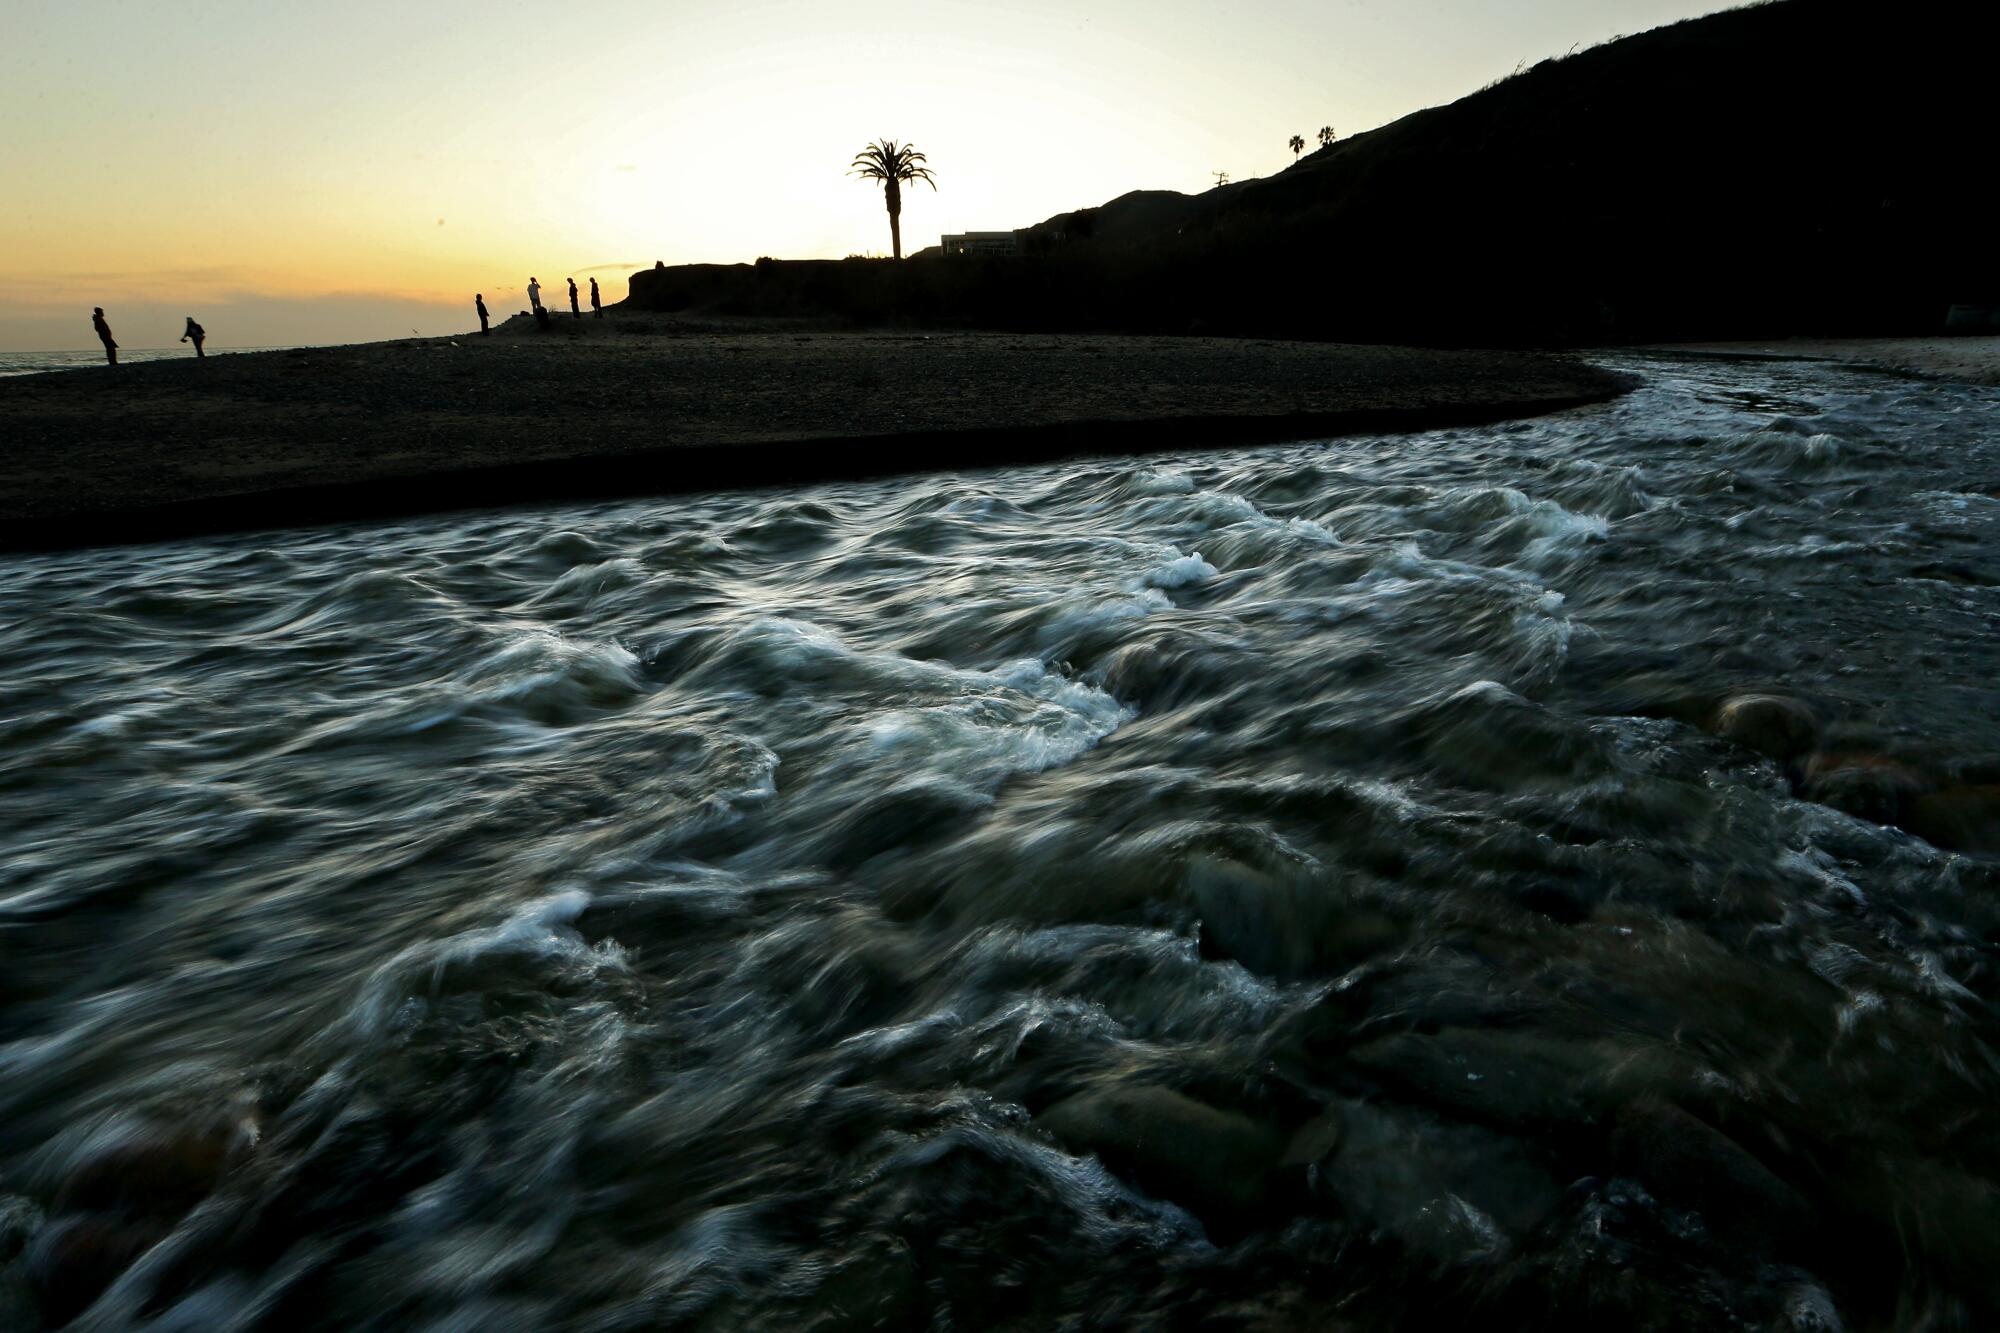  Topanga Creek rushes into the Pacific Ocean in Malibu.